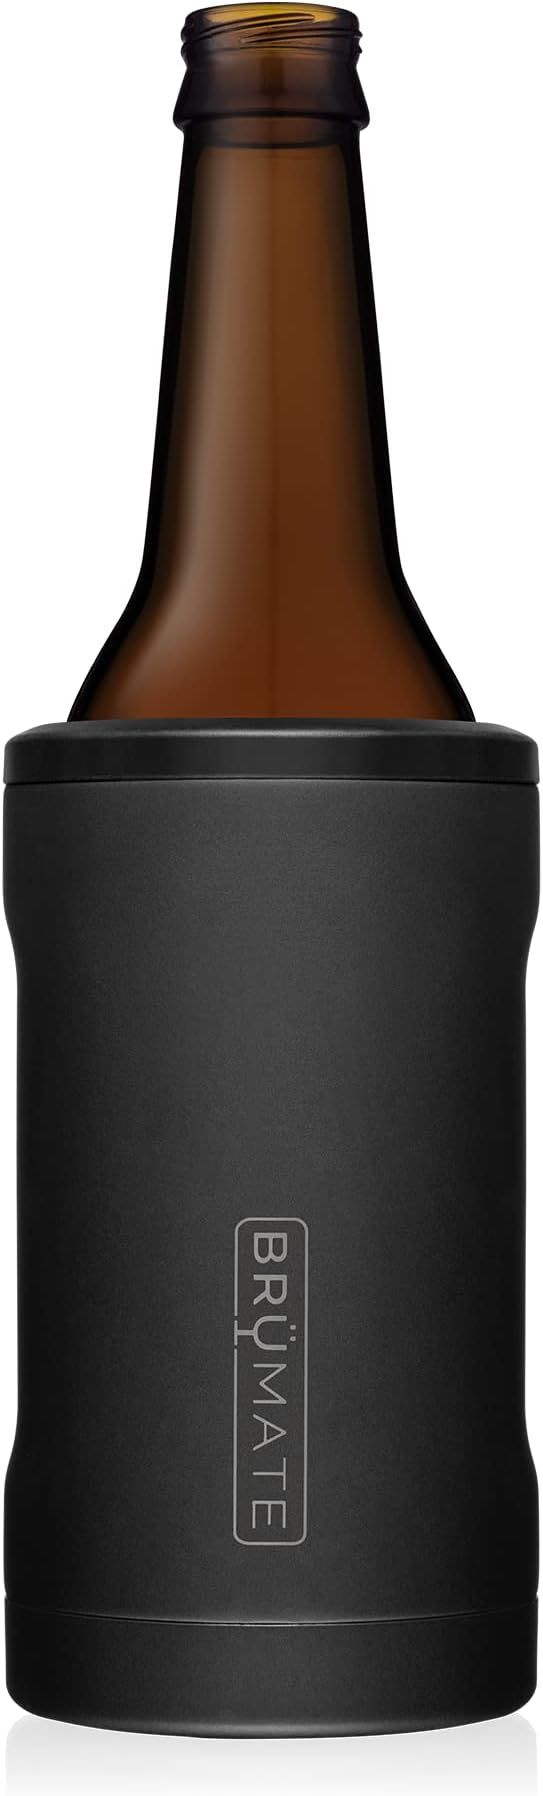 Amazon.com: BrüMate Hopsulator Bott'l Insulated Bottle Cooler for Standard 12oz Glass Bottles | ... | Amazon (US)